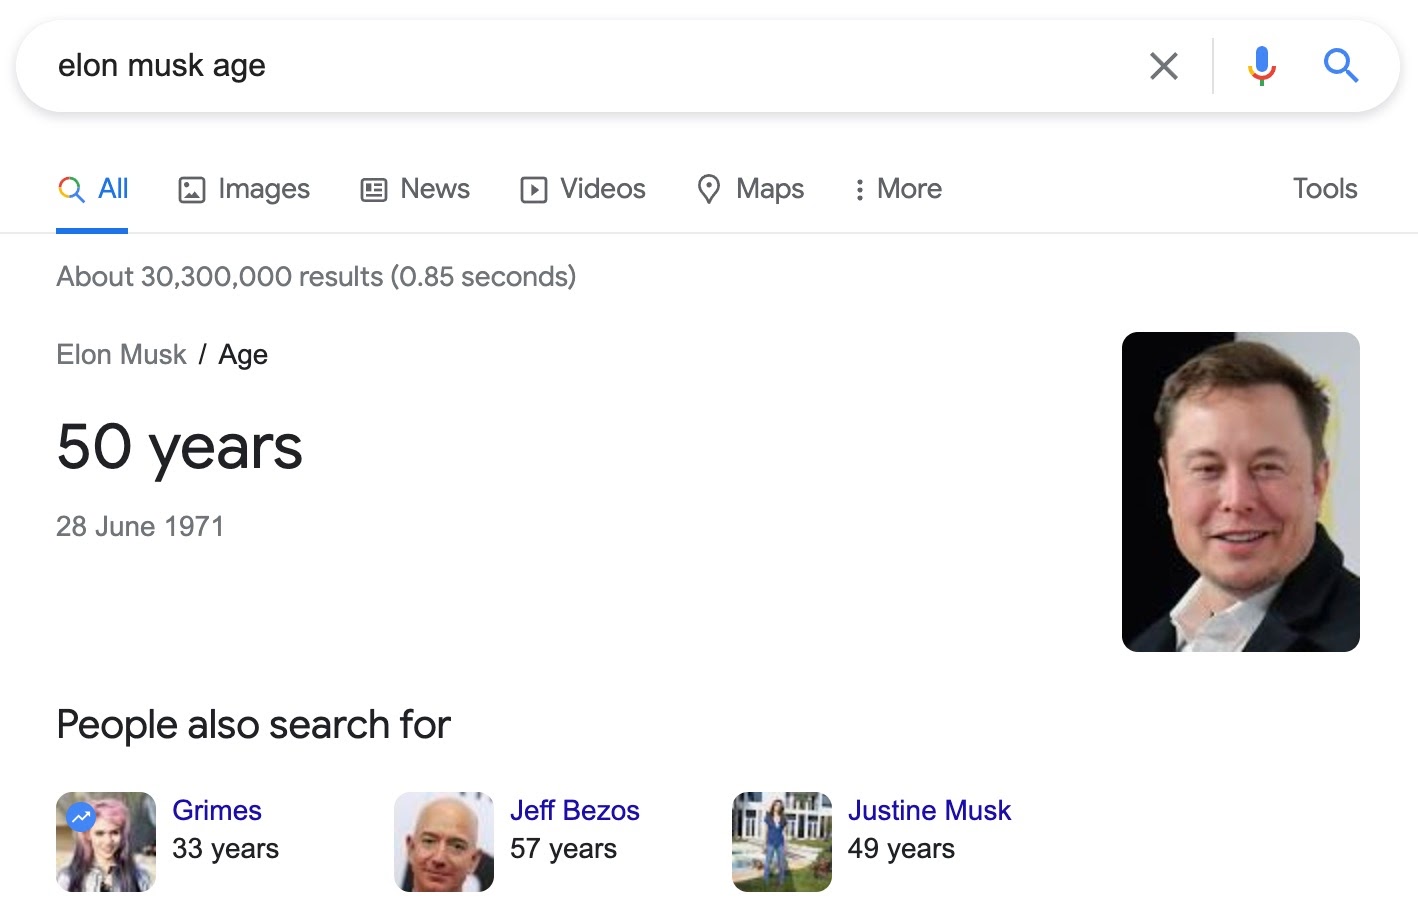 پاسخ فوری «عصر ایلان ماسک» در جستجوی گوگل